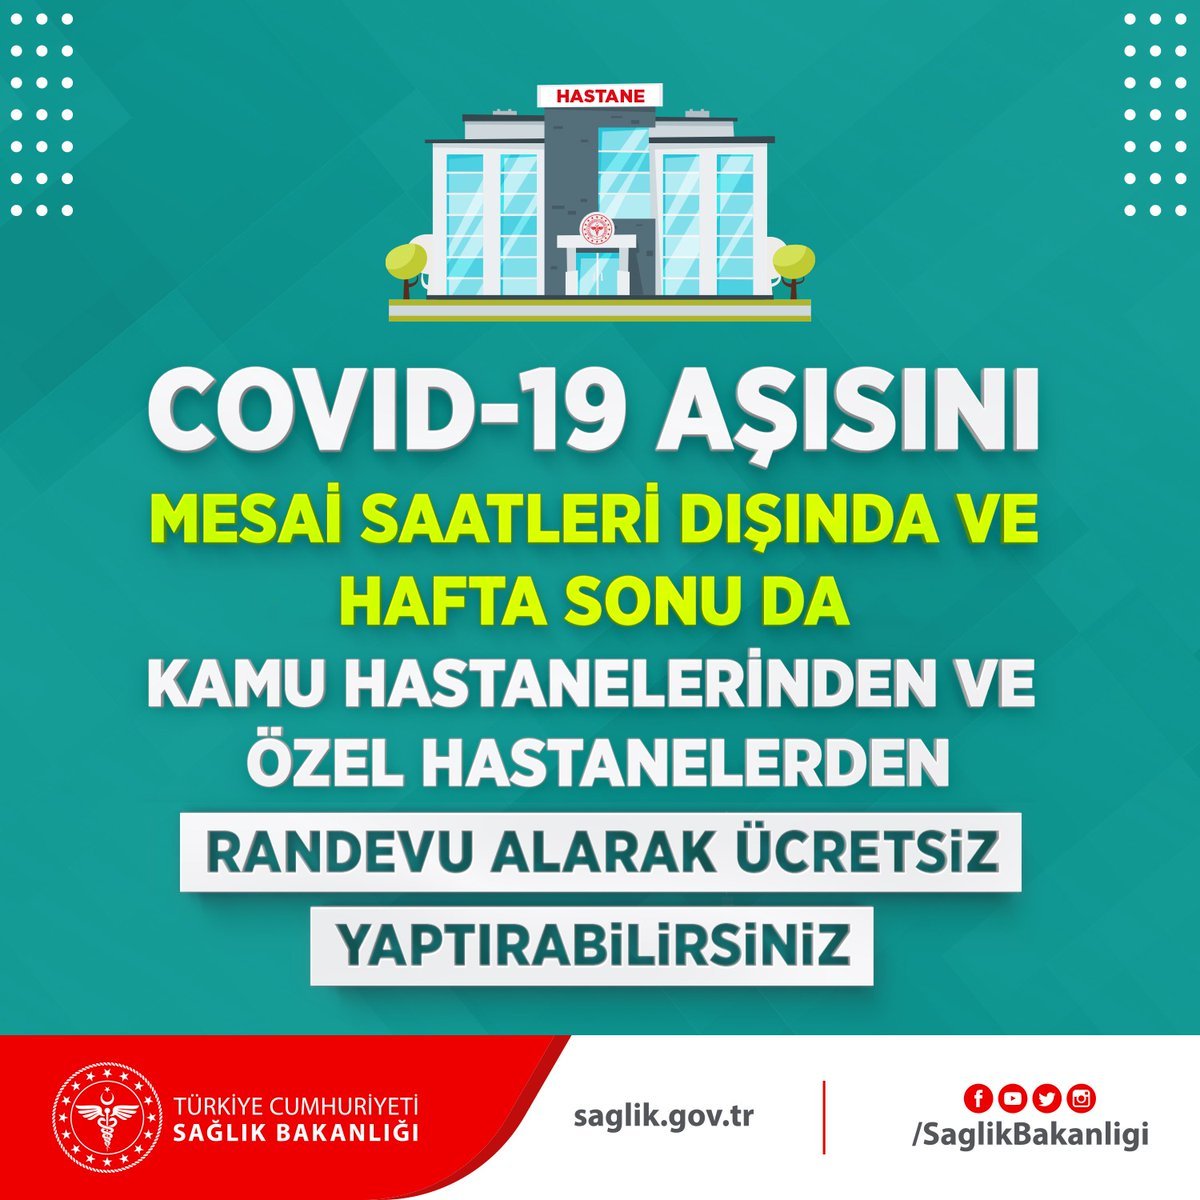 COVID-19 aşısını mesai saatleri dışında ve hafta sonu da hastanelerden randevu alarak ücretsiz yaptırabilirsiniz.